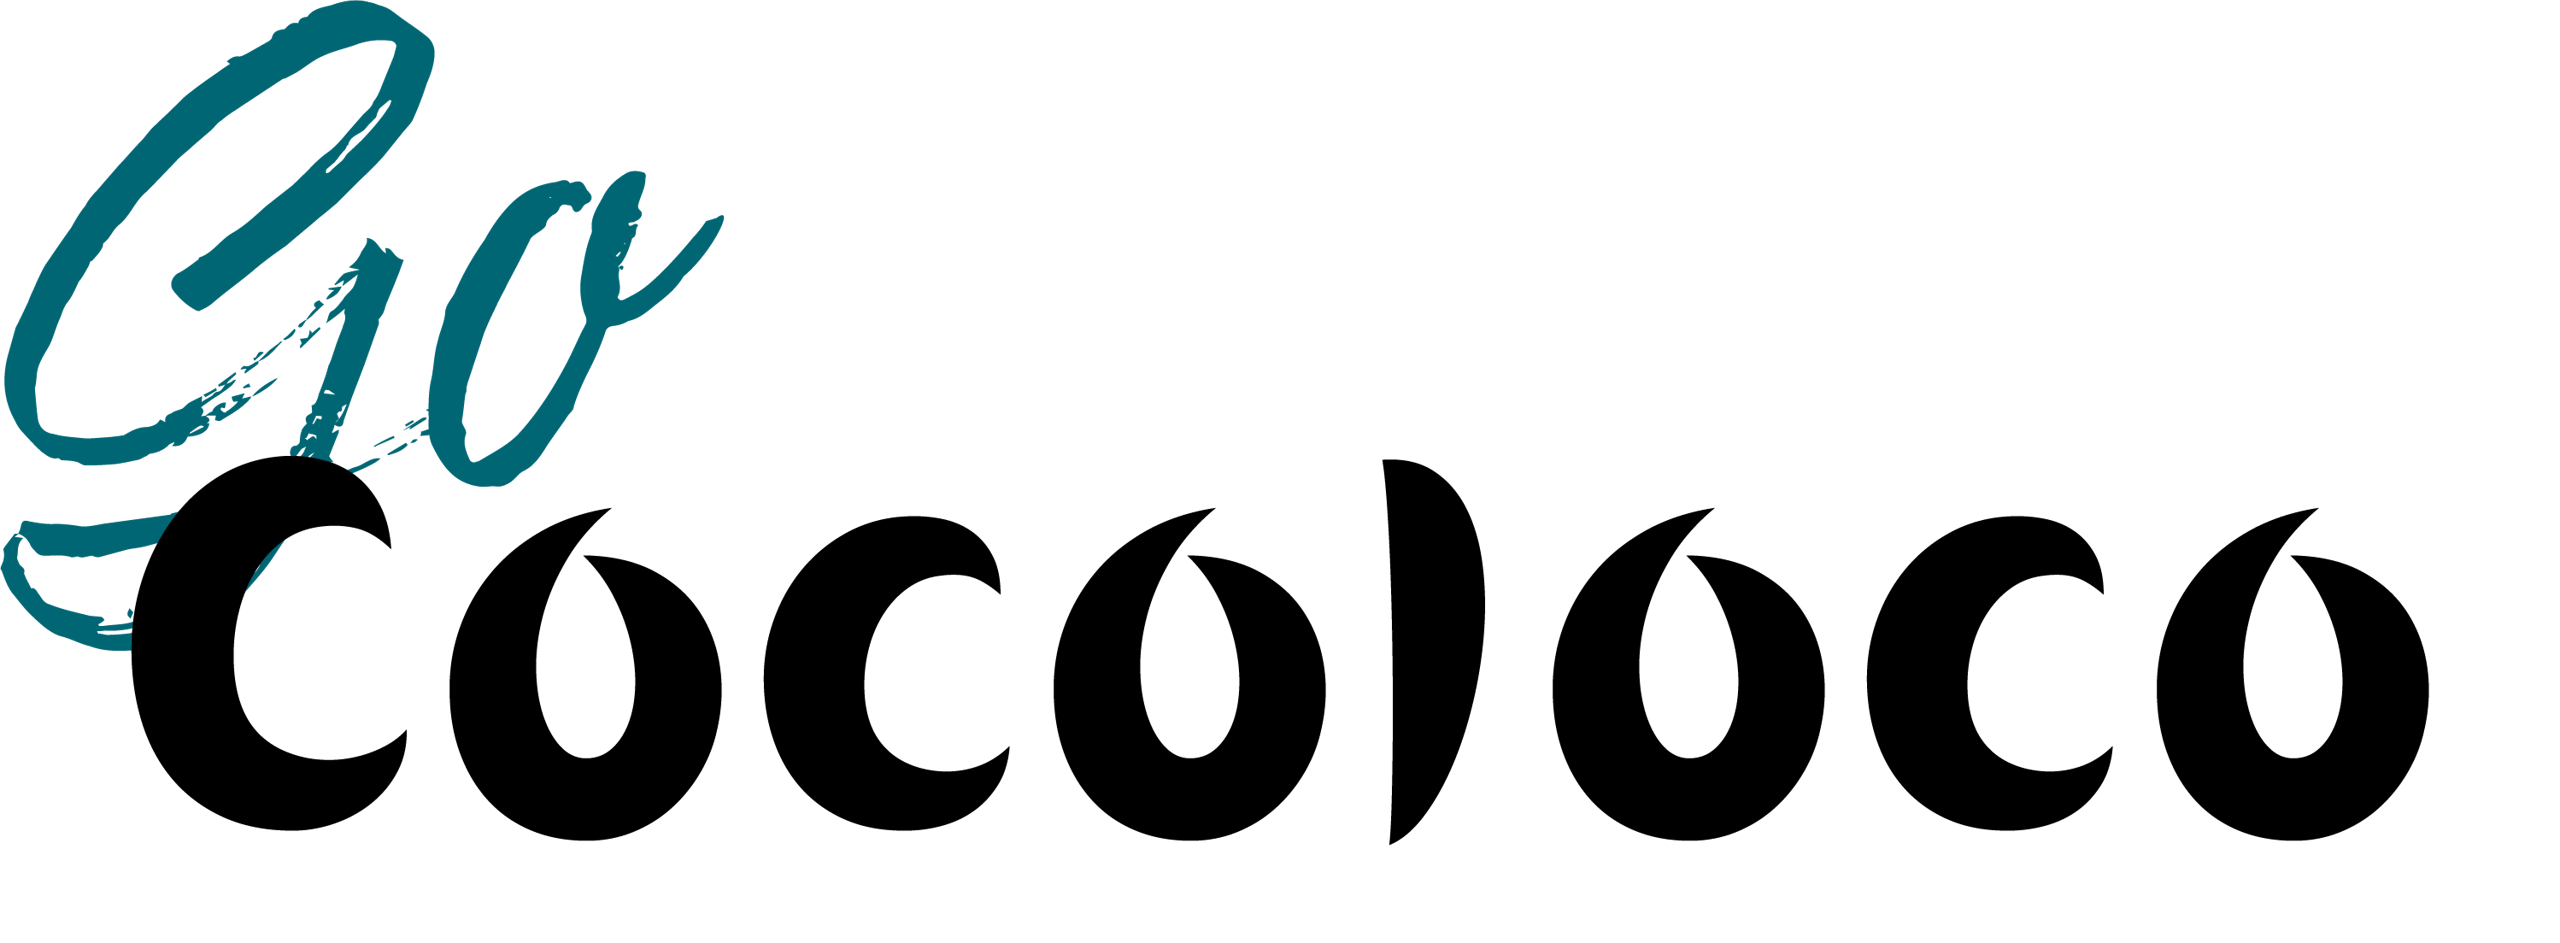 Go-Cocoloco